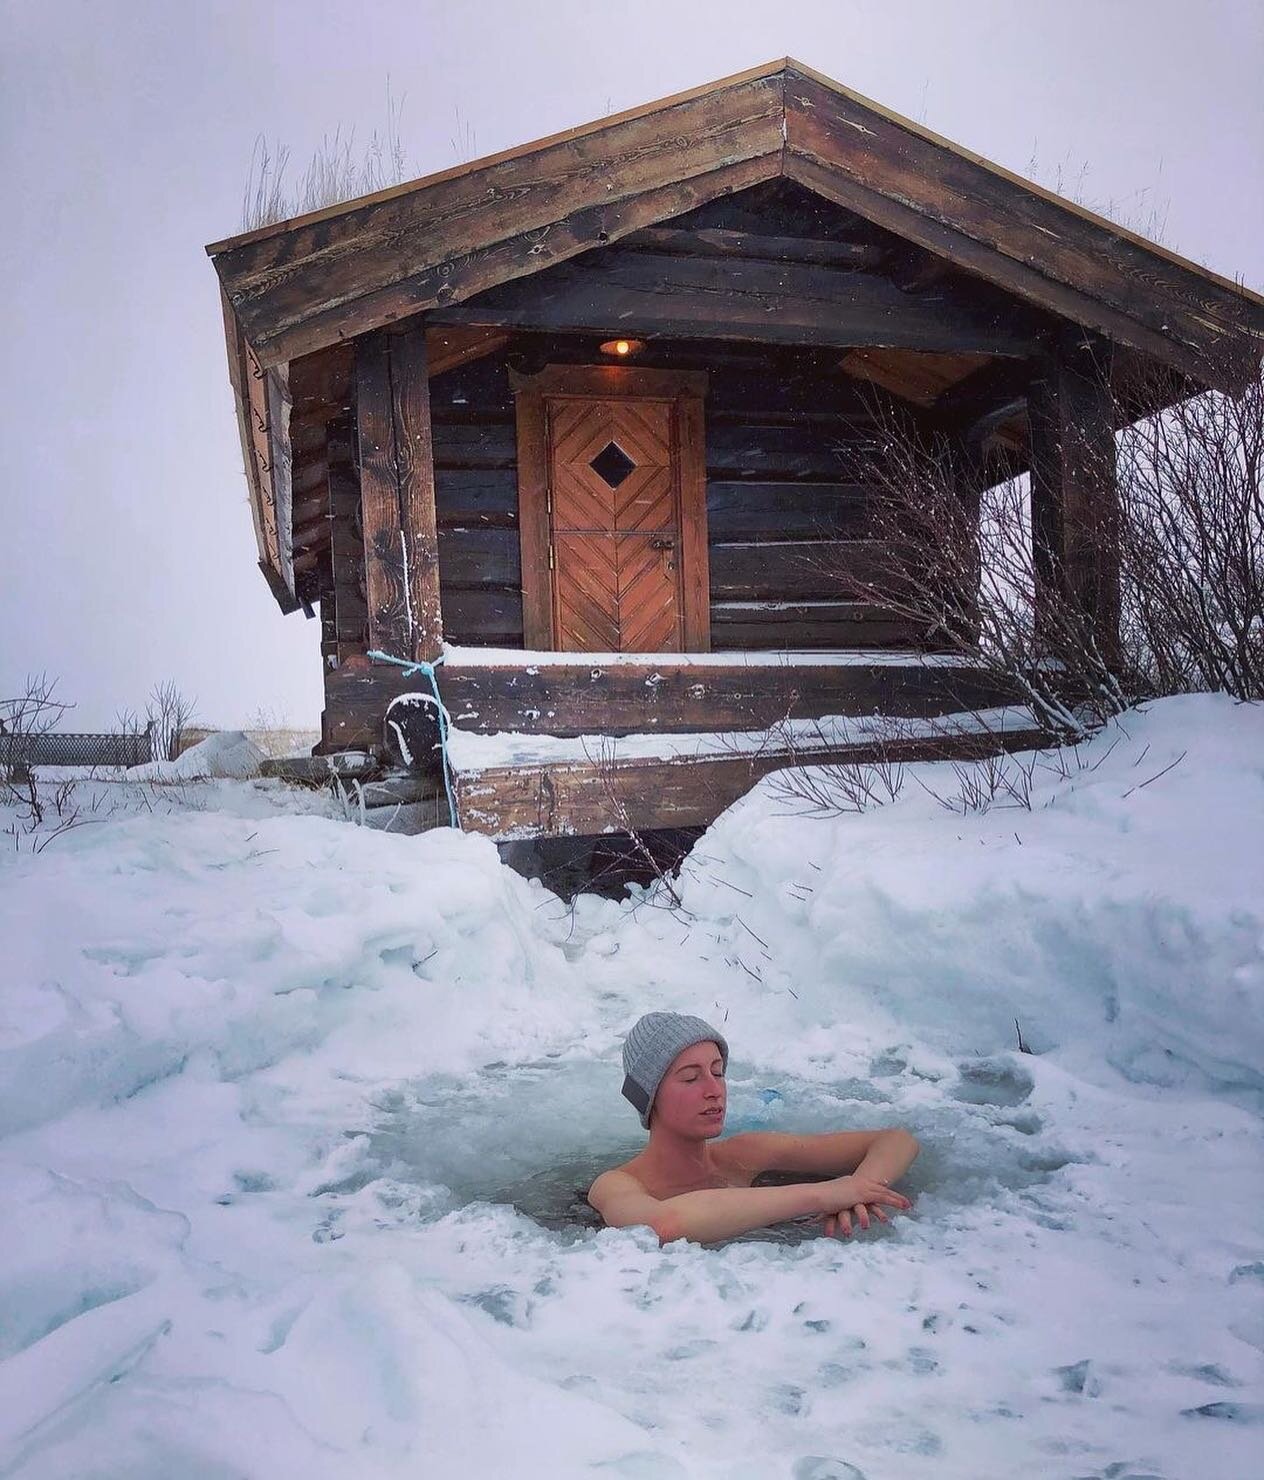 TA EN PUST I BAKKEN og opplev naturens beroligende kraft💙 Dagens oppfordring fra Brekkeseter! Blir det kanskje et isbad i p&aring;skeferien?
📸: @hotellbrekkeseter 
.
.
#fjelletkaller #roisjelen #tavarepådegselv #pustibakken #isbad #sauna #velv&ael